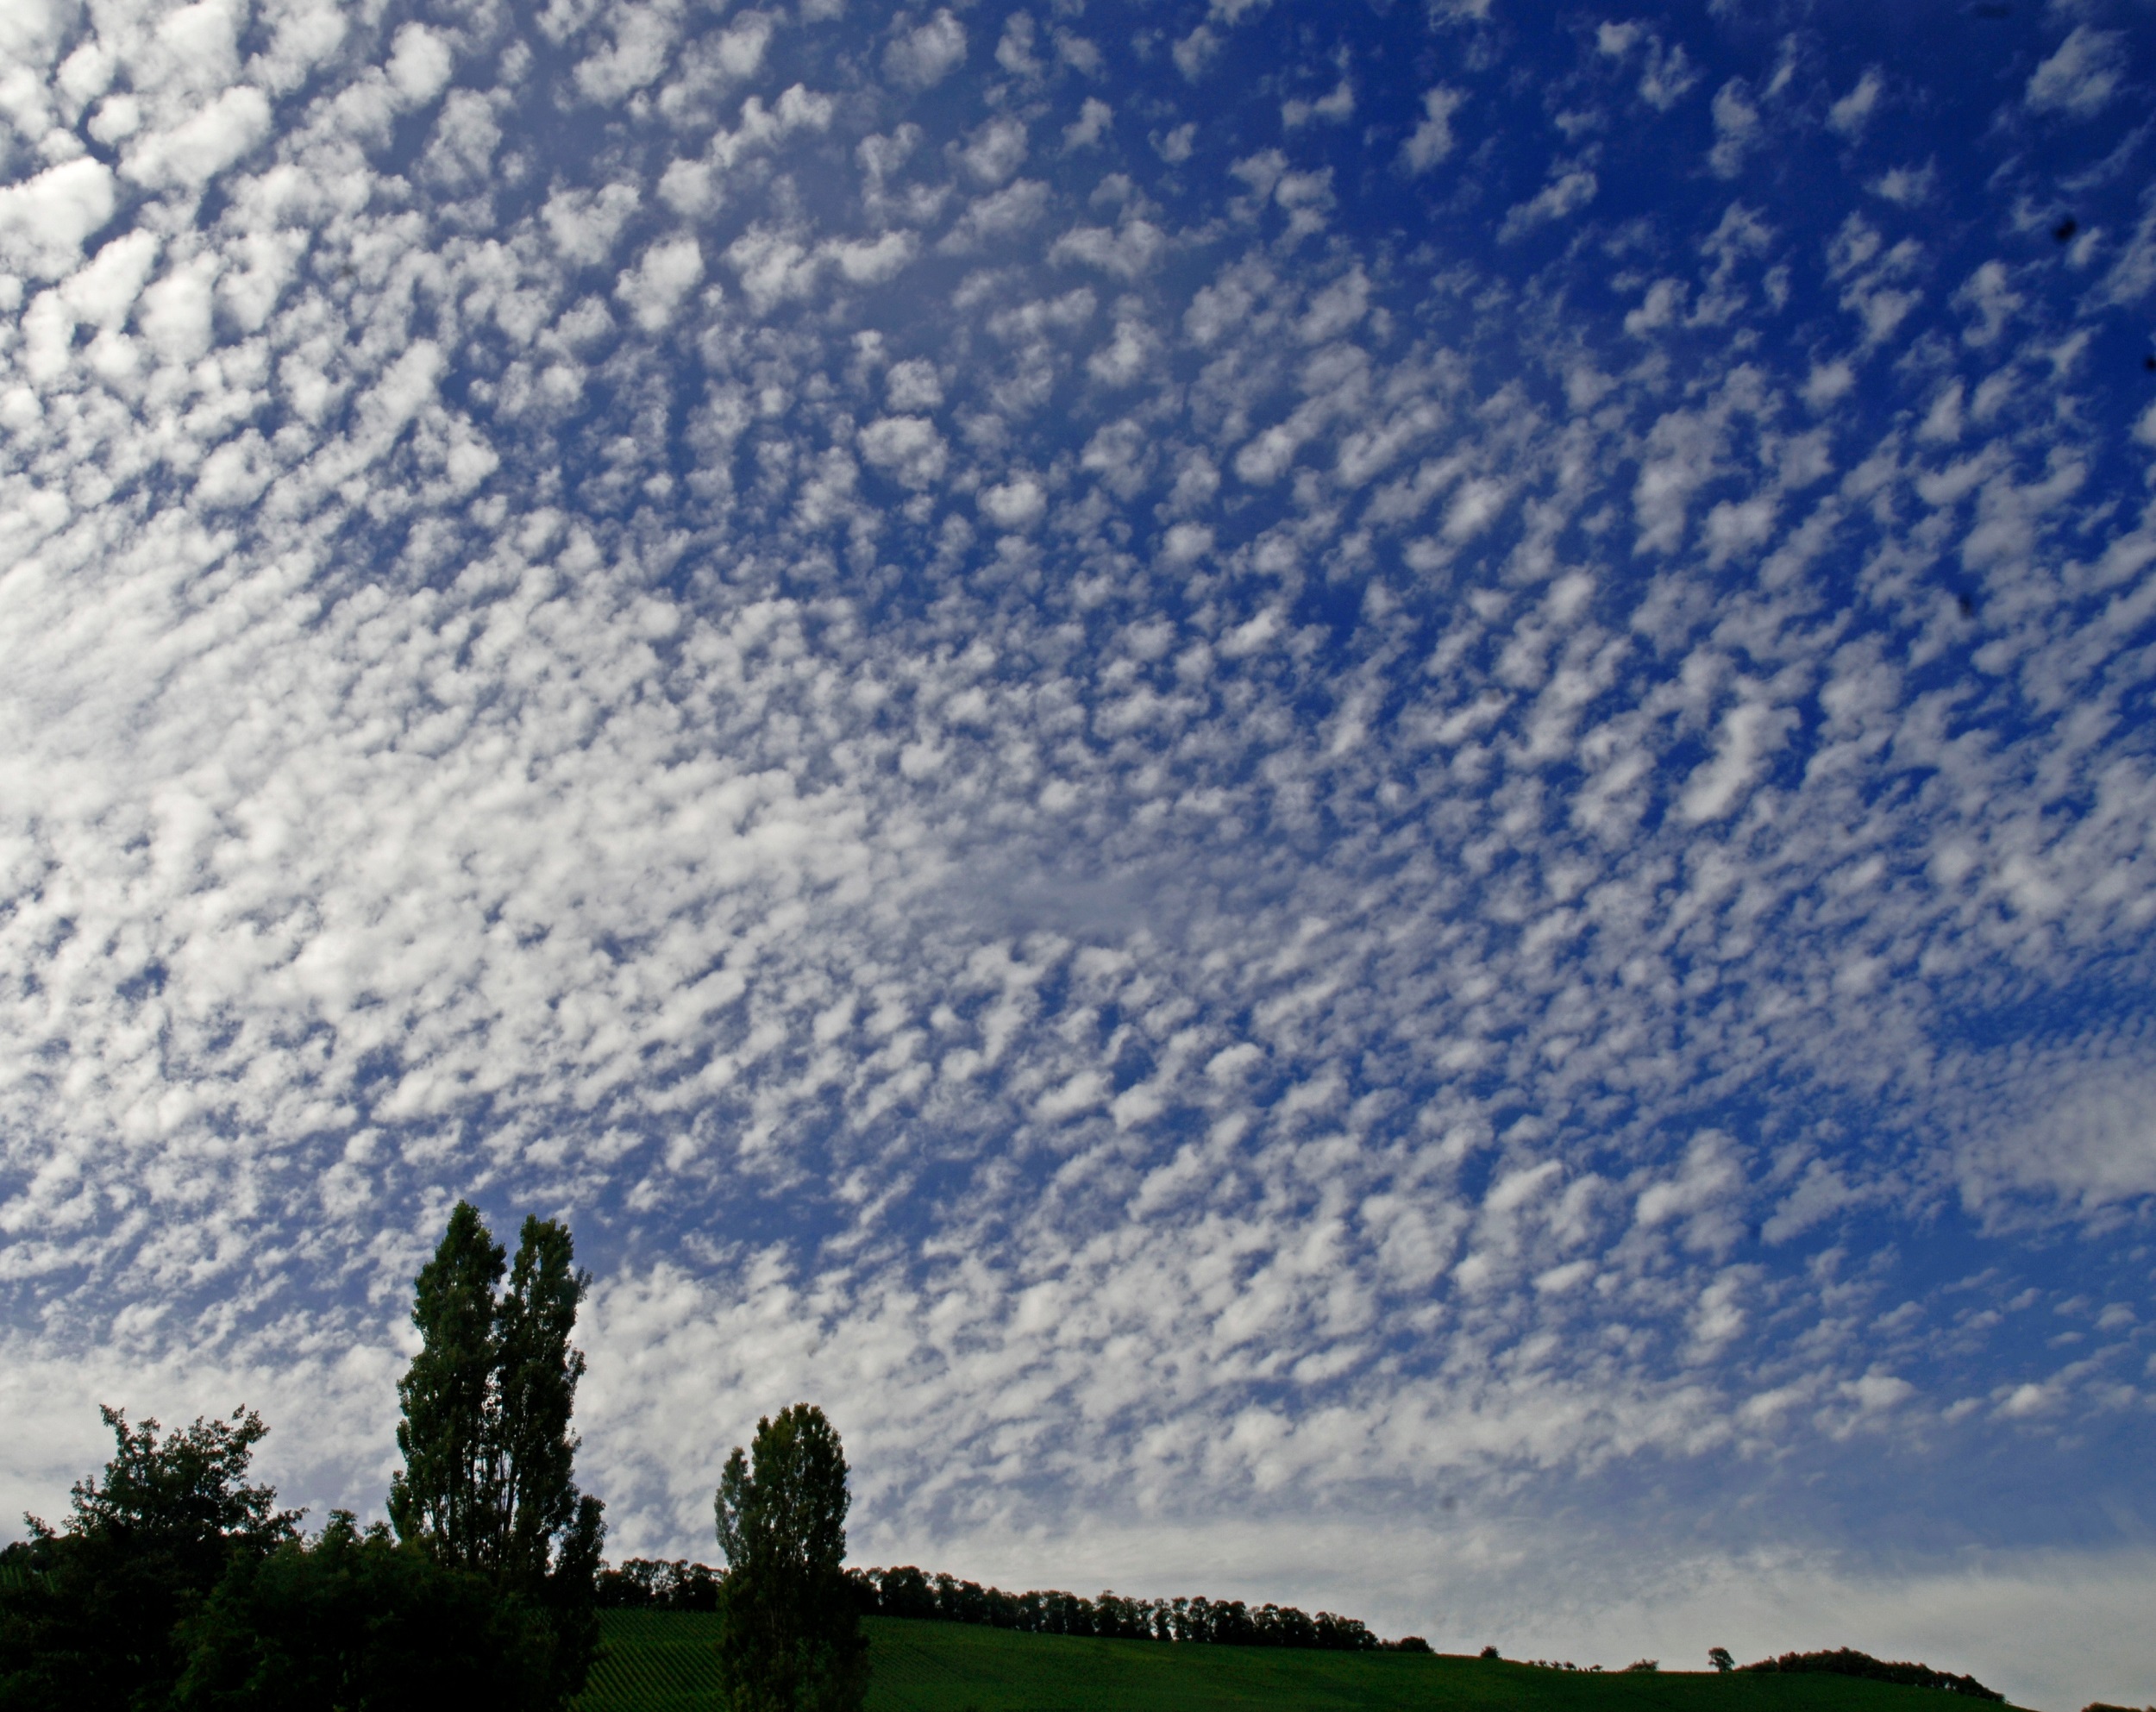 Les nuages moutons indiquent que le beau temps va évoluer vers autre chose le lendemain. © reinhard sester, Adobe Stock